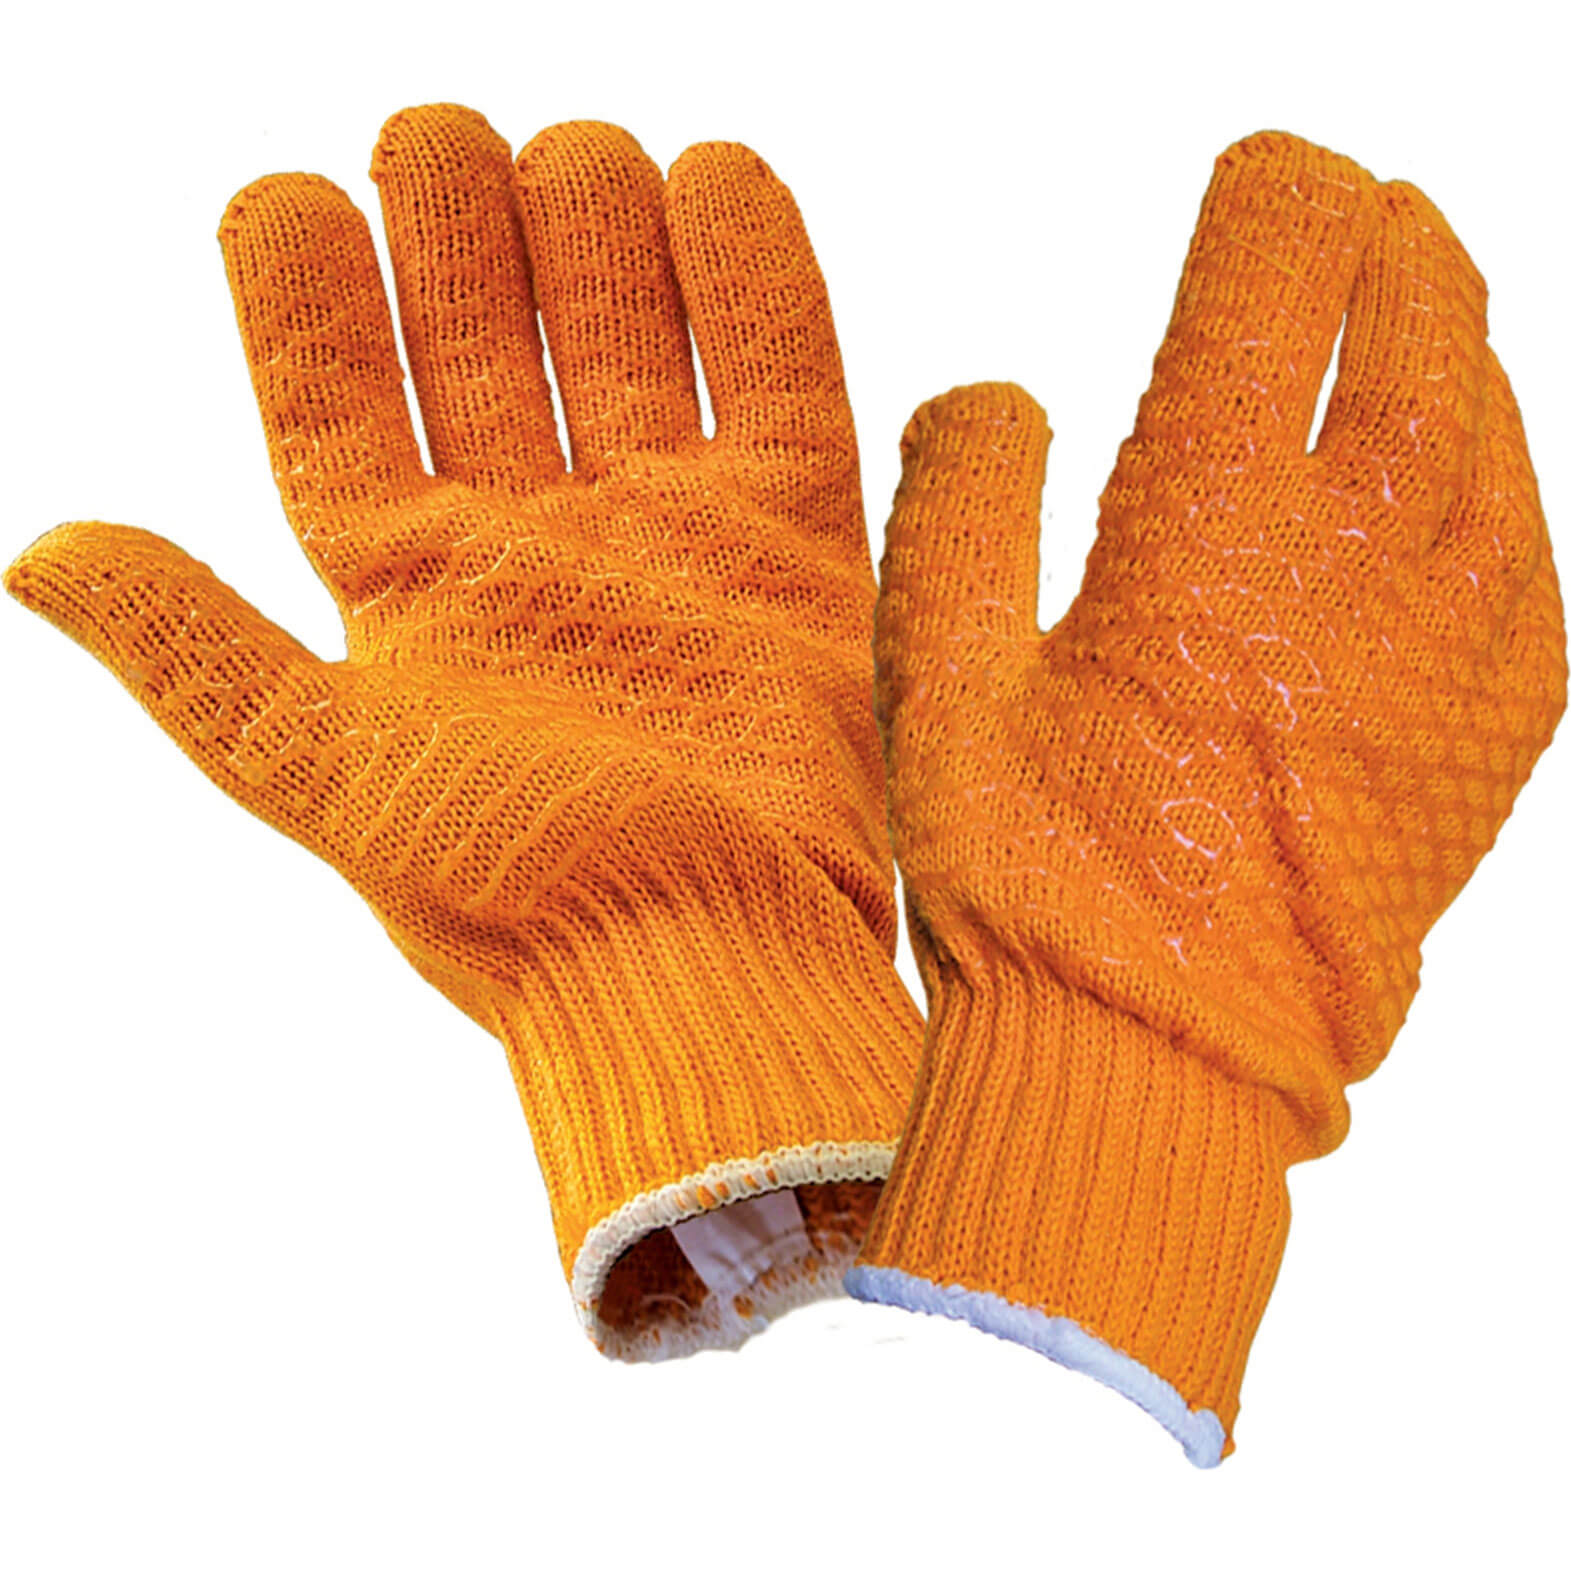 Image of Scan Gripper Glove Orange One Size